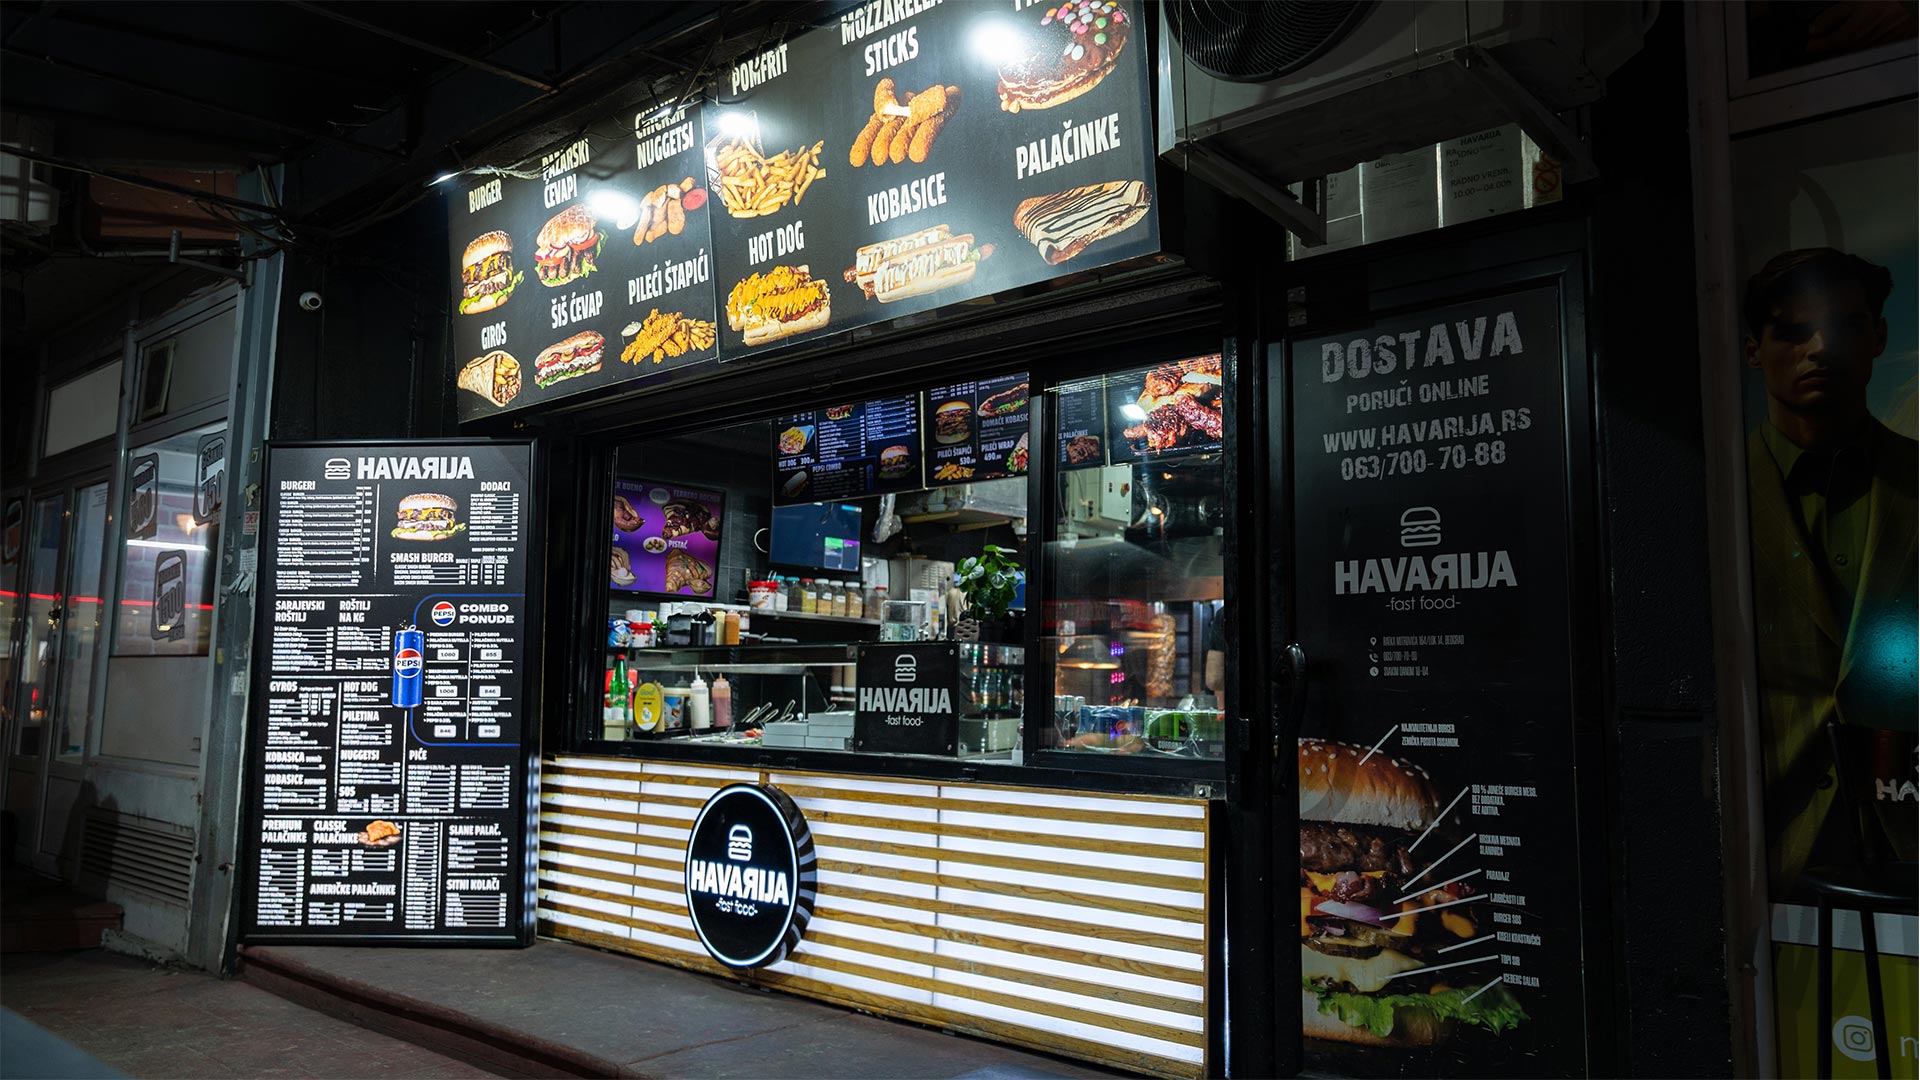 Fast food Havarija | HAVARIJA VIDIKOVAC